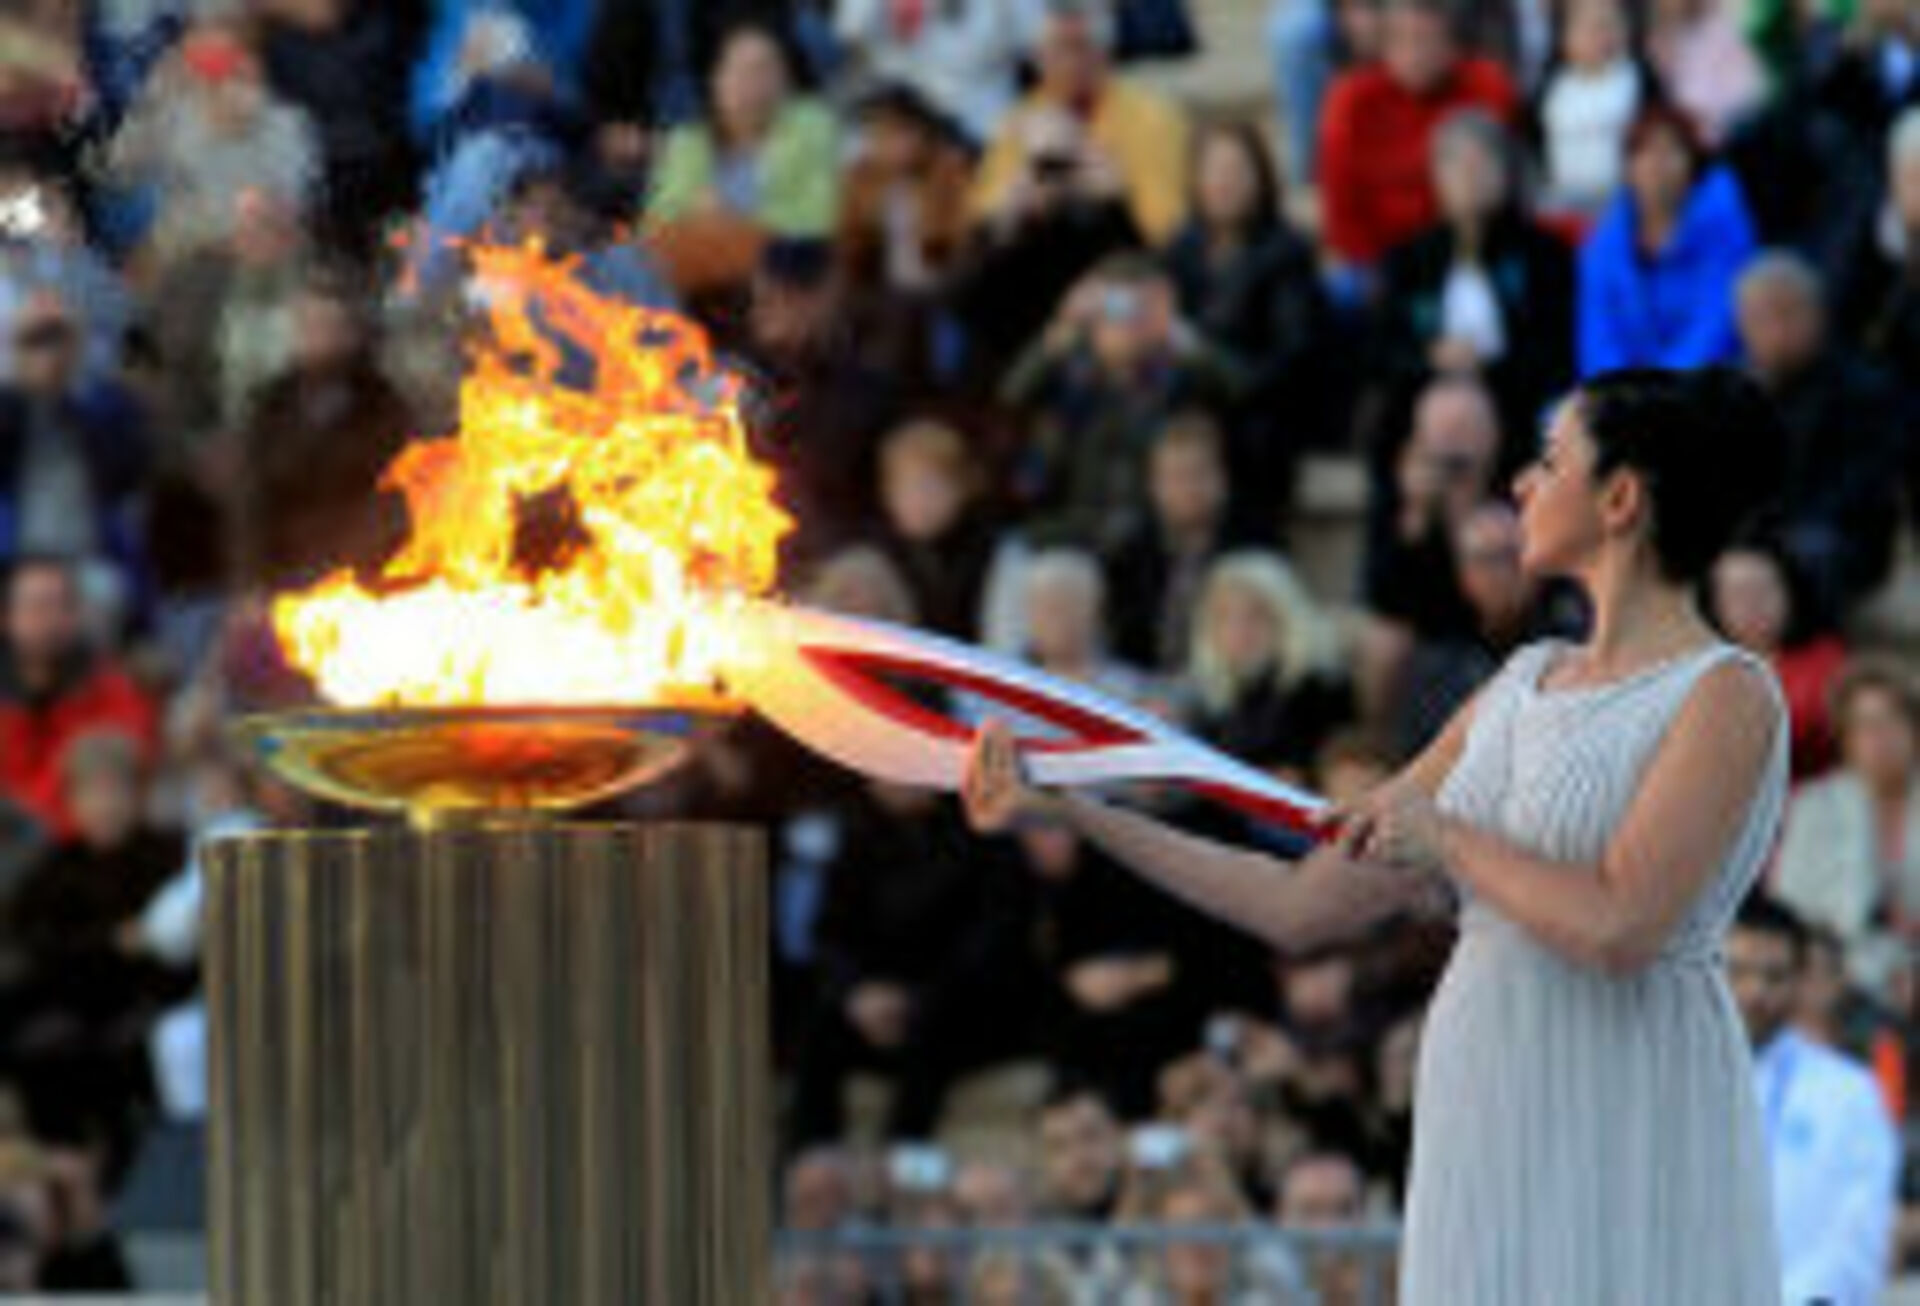 Олимпийский огонь современных игр зажигается. Факел эстафеты олимпийского огня. Зажжение олимпийского огня. Олимпийский огонь 2014. Церемония зажжения олимпийского огня.